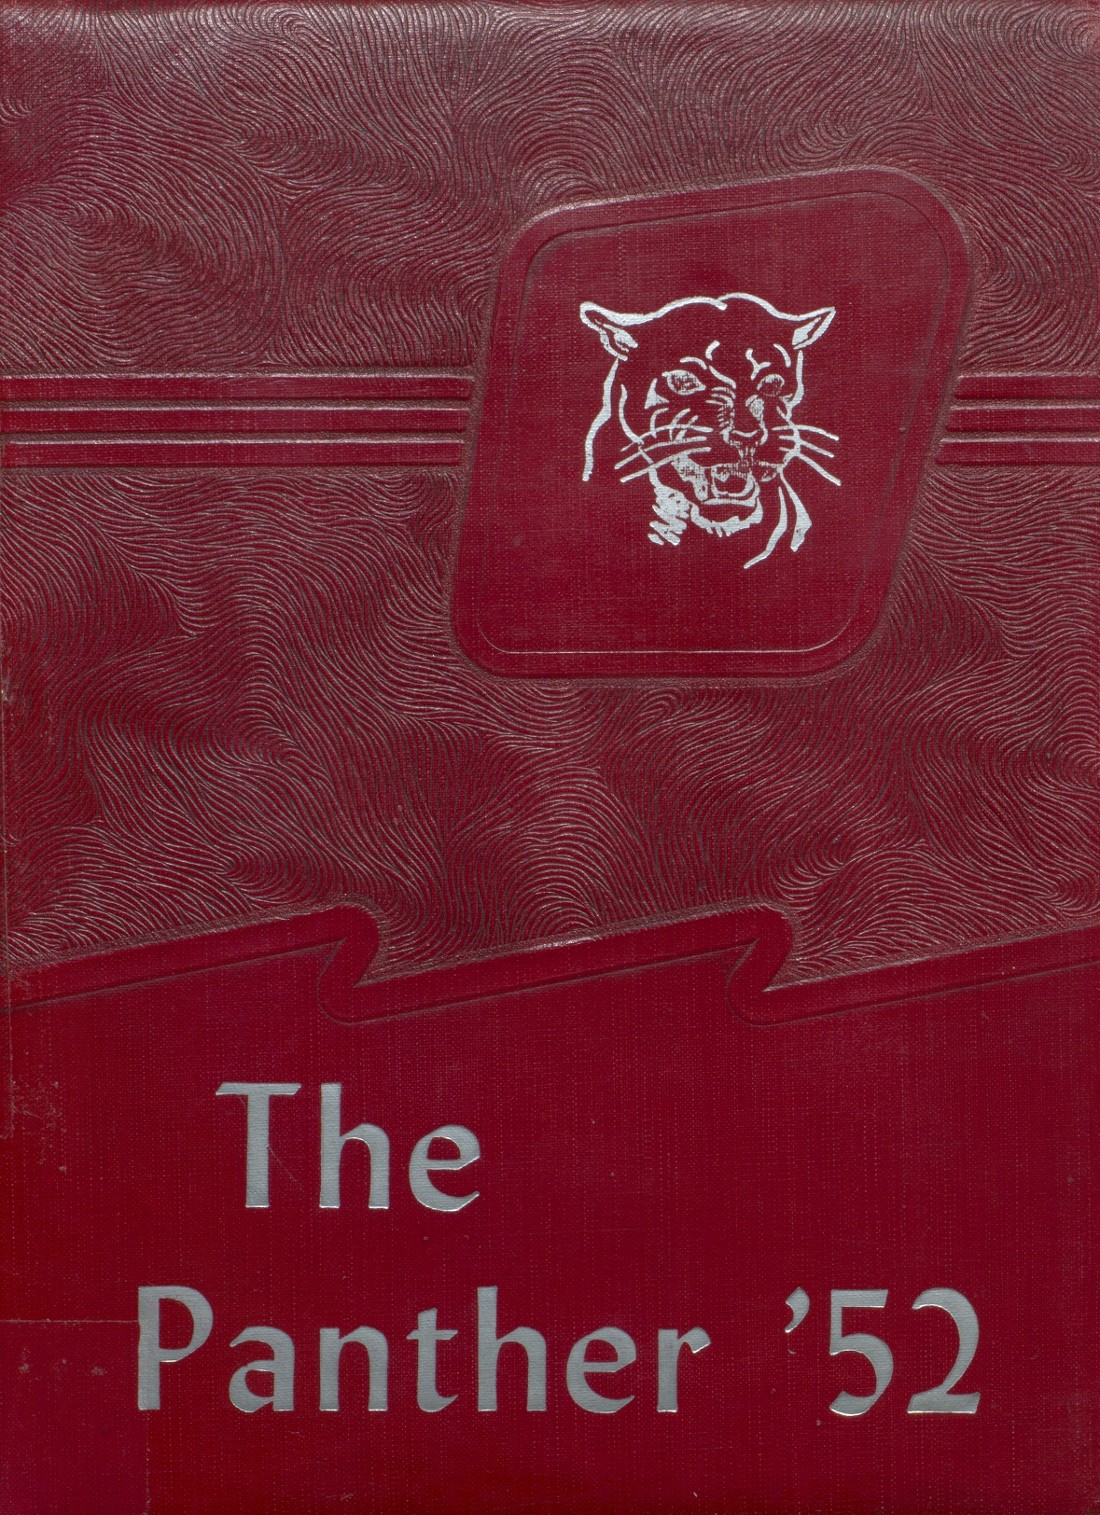 1952-yearbook-from-benton-high-school-from-benton-arkansas-for-sale